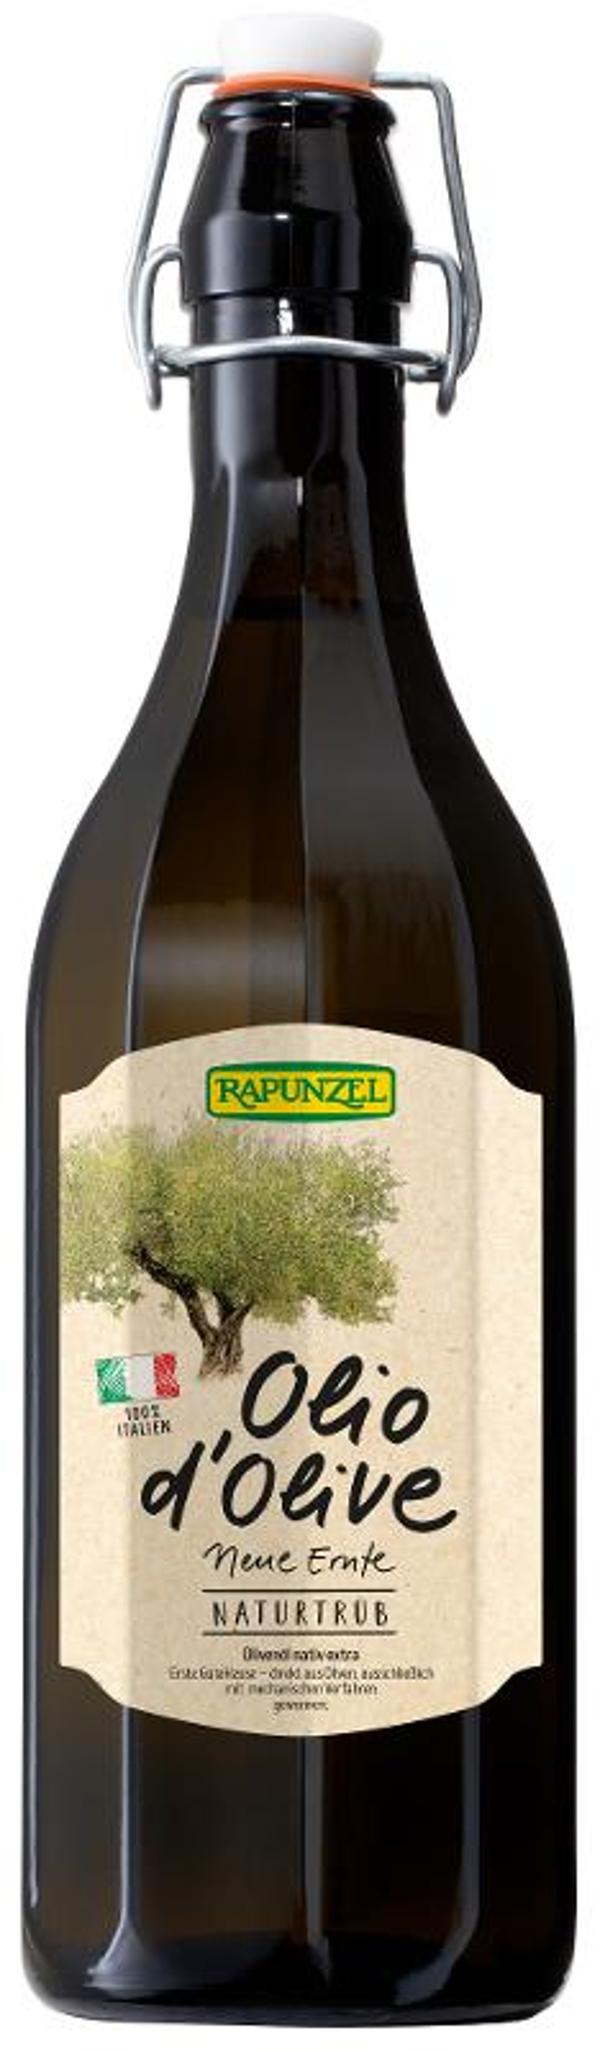 Produktfoto zu Olivenöl Olio d'Olive tradizionale von Rapunzel